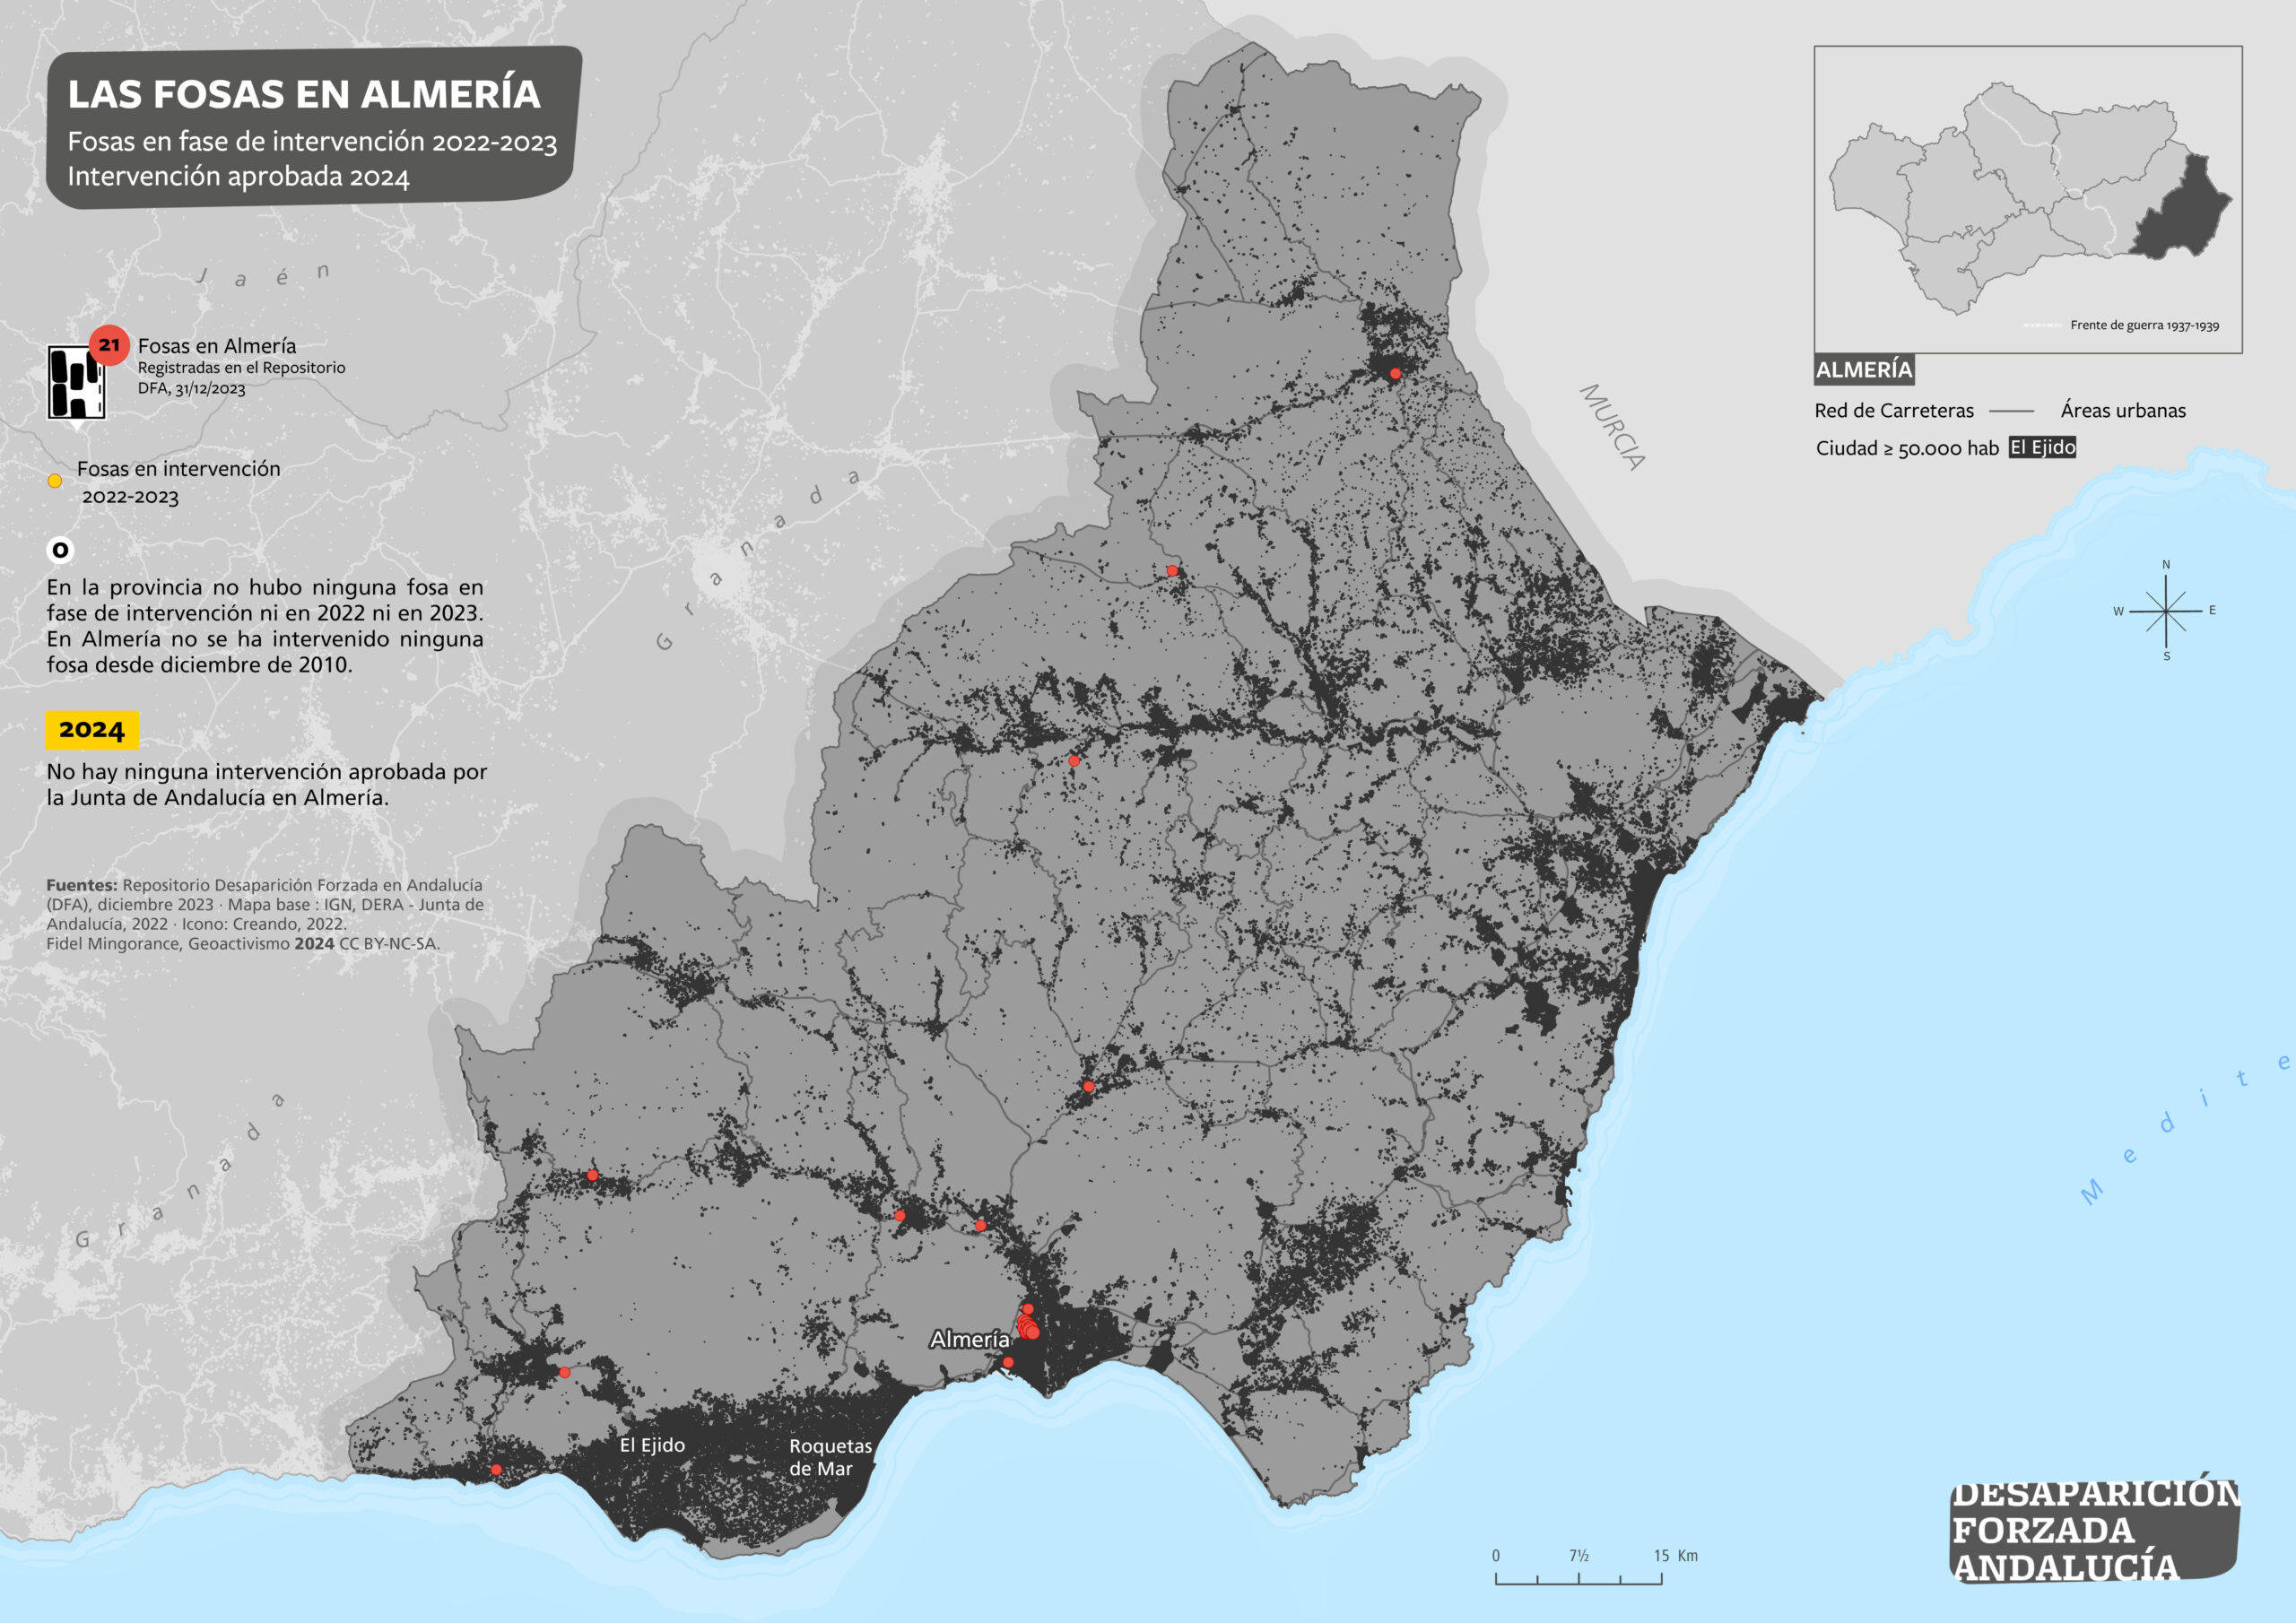 Las fosas en Almería.  Fosas en fase de intervención en 2022-2023. Intervenciones aprobadas 2024